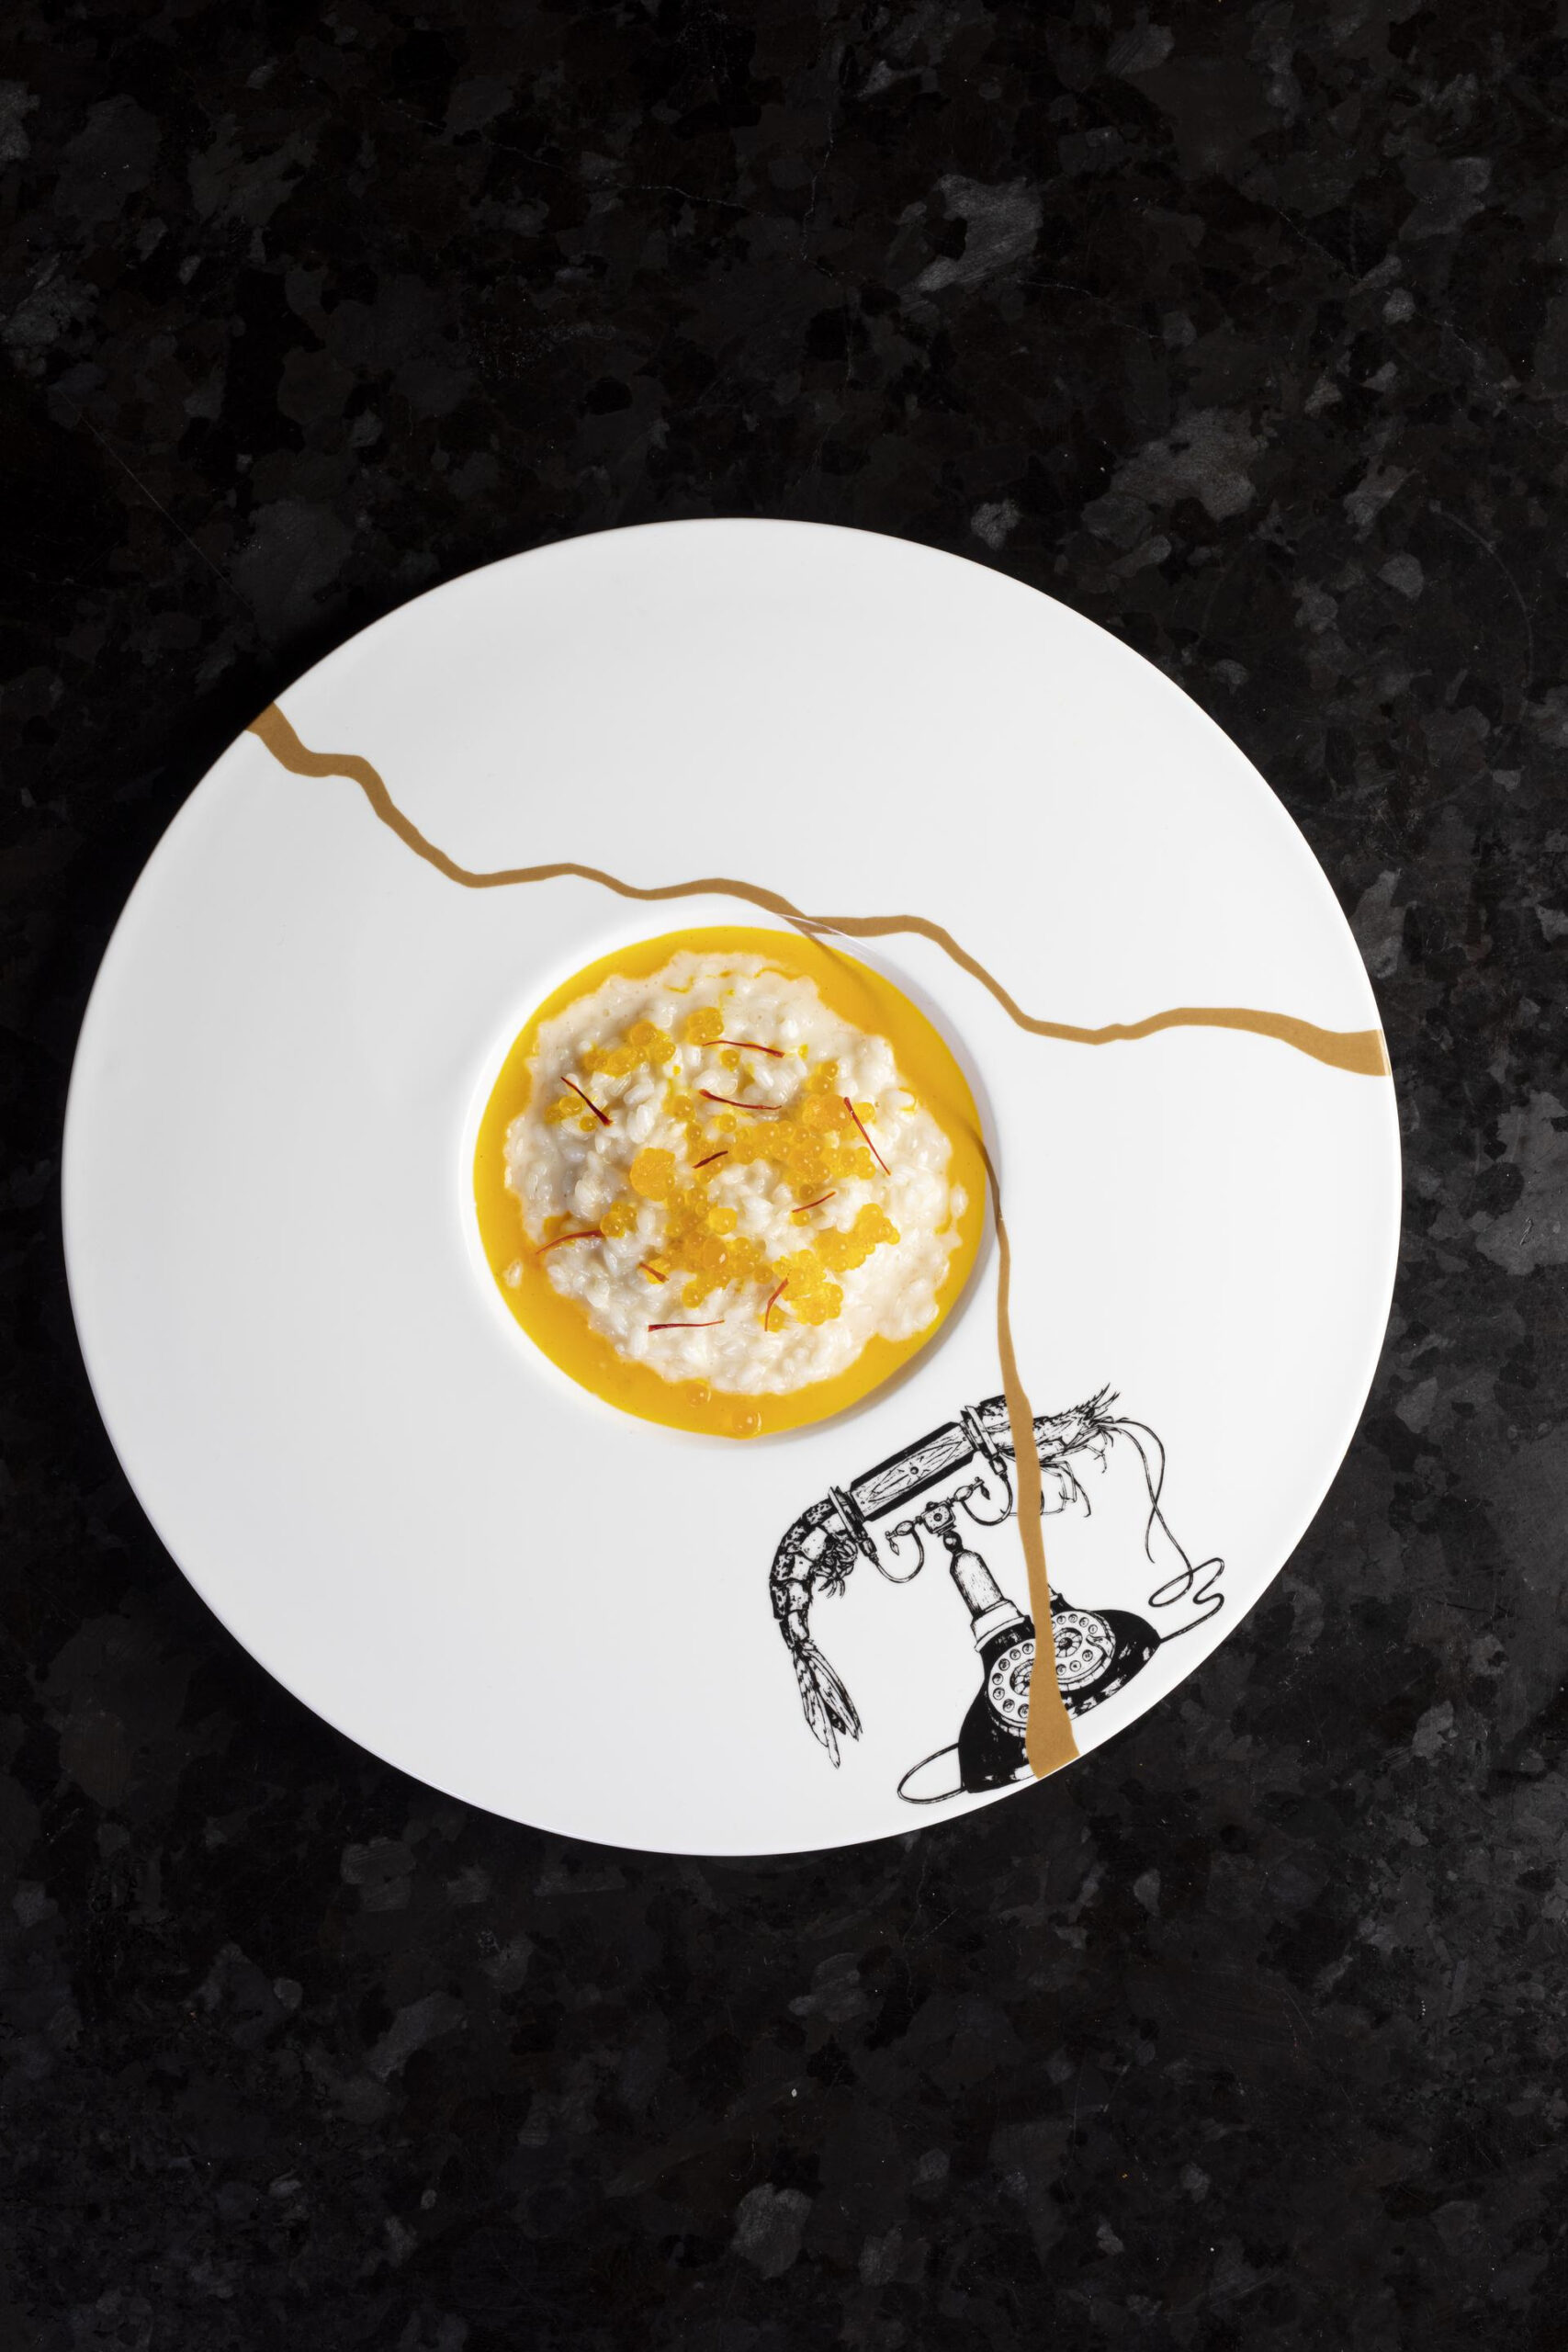 Dada in Taverna e l'arte dei piatti, foto da comunicato stampa